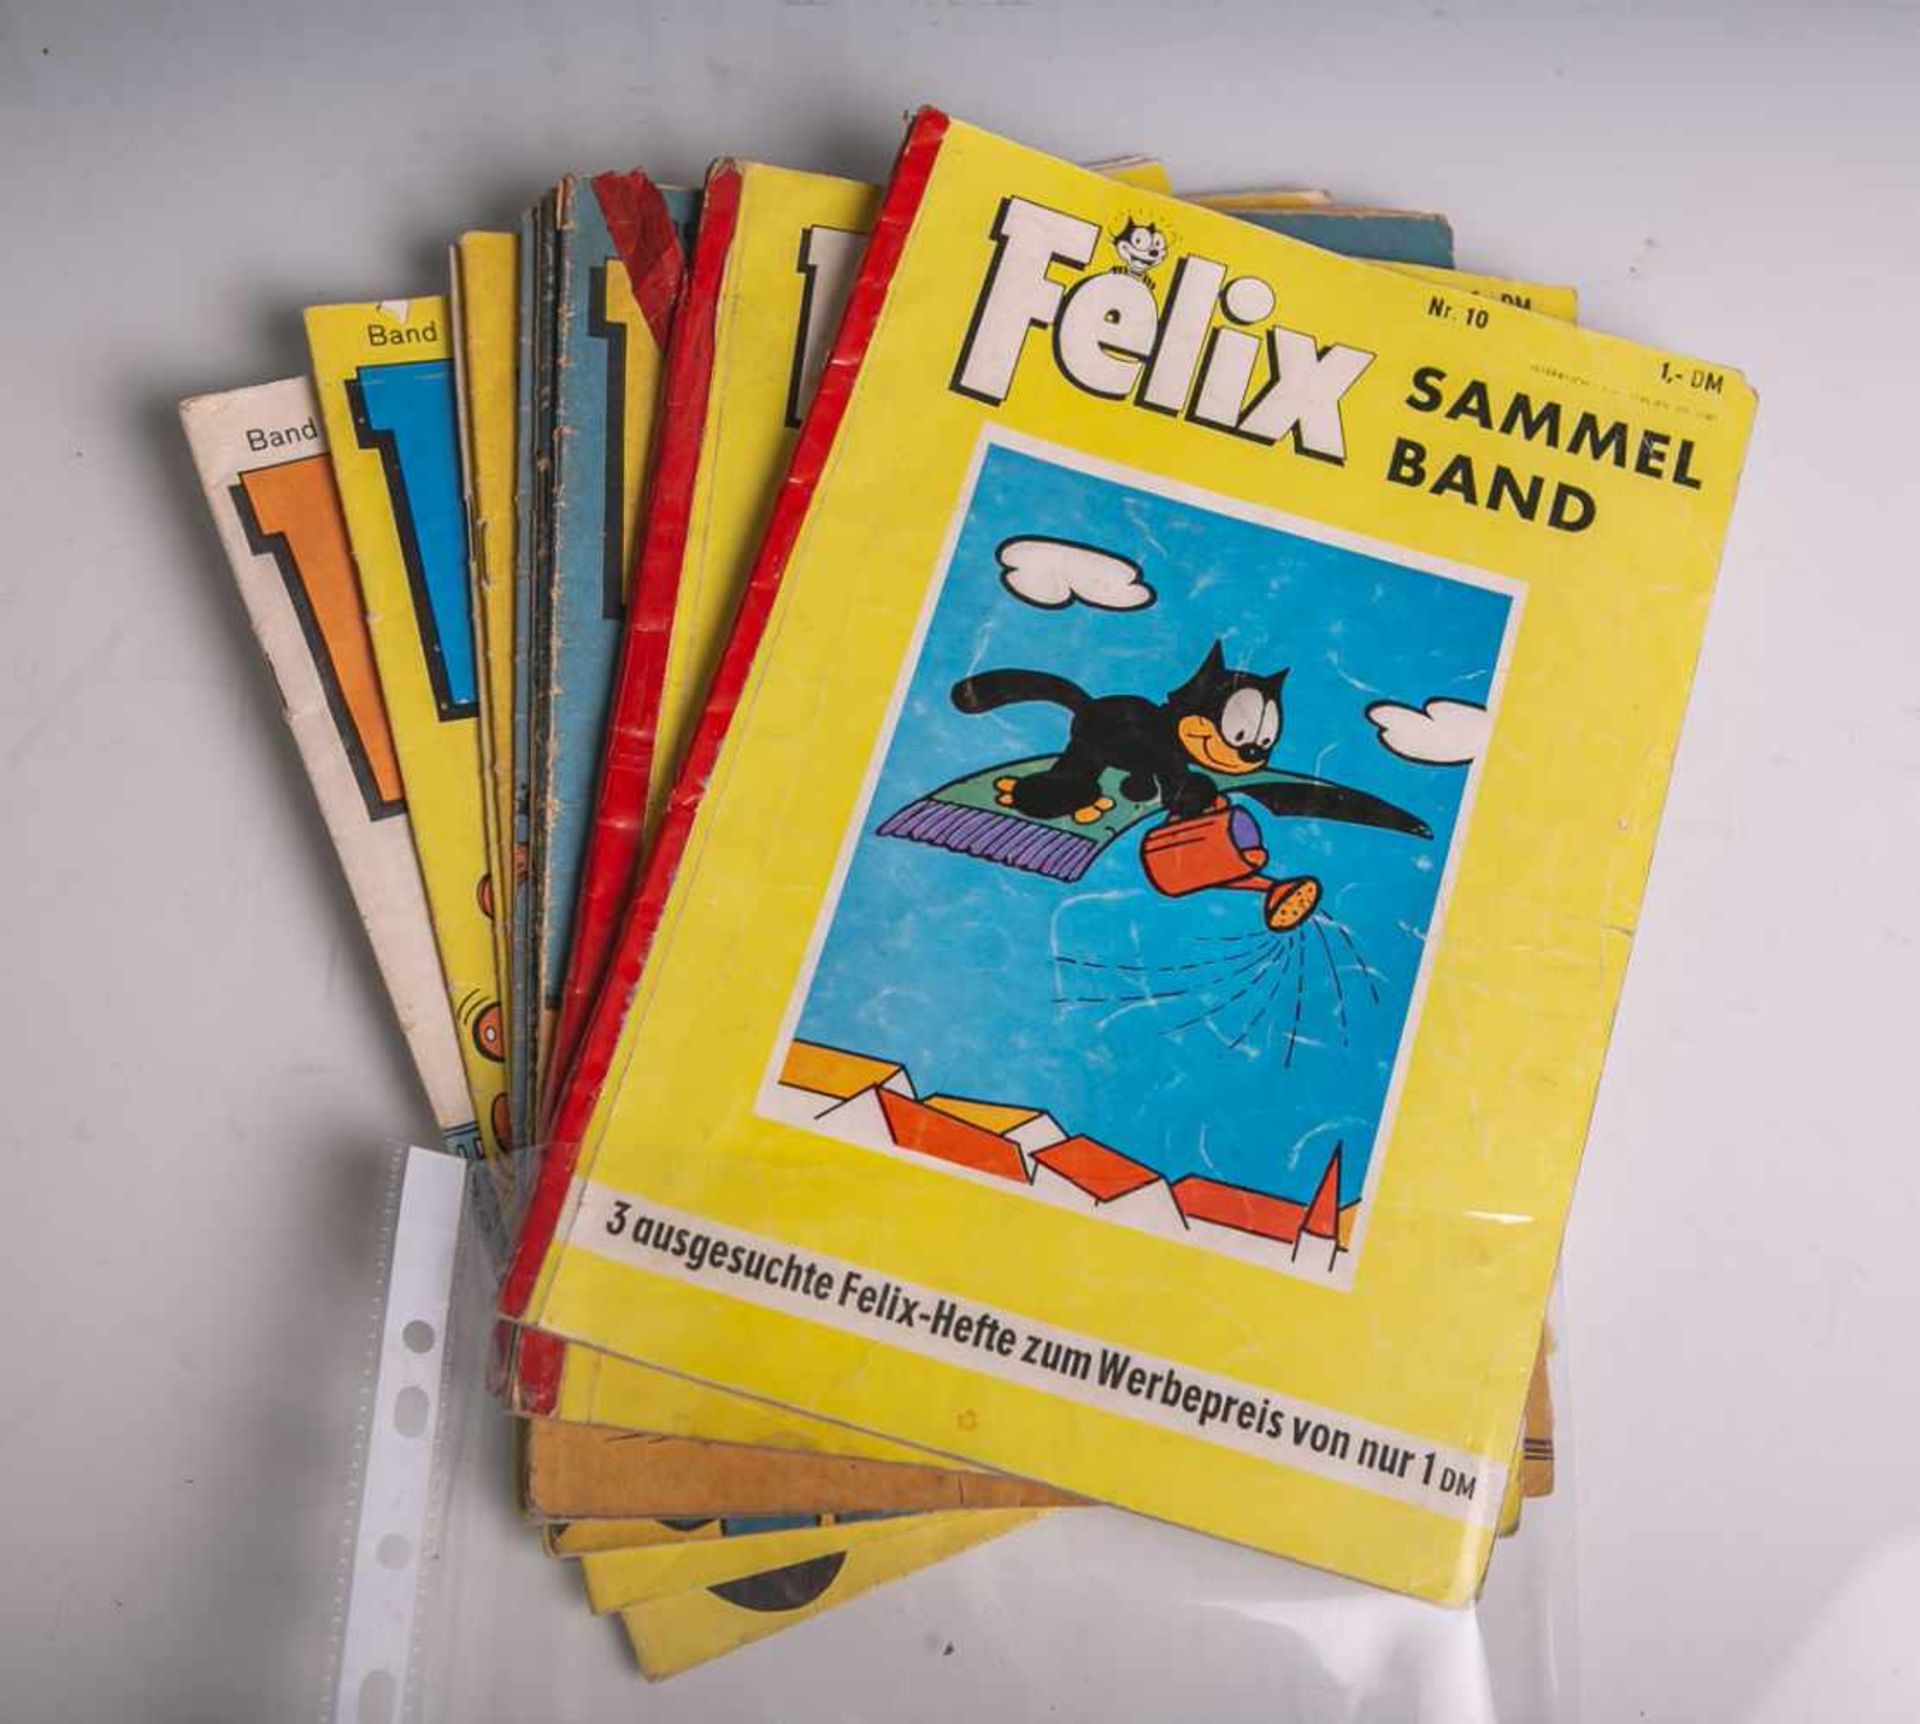 Konvolut von 10 Comic-Heften "Felix" (1960er Jahre), Band 164, 170, 175, 200, 215, 2x 260,